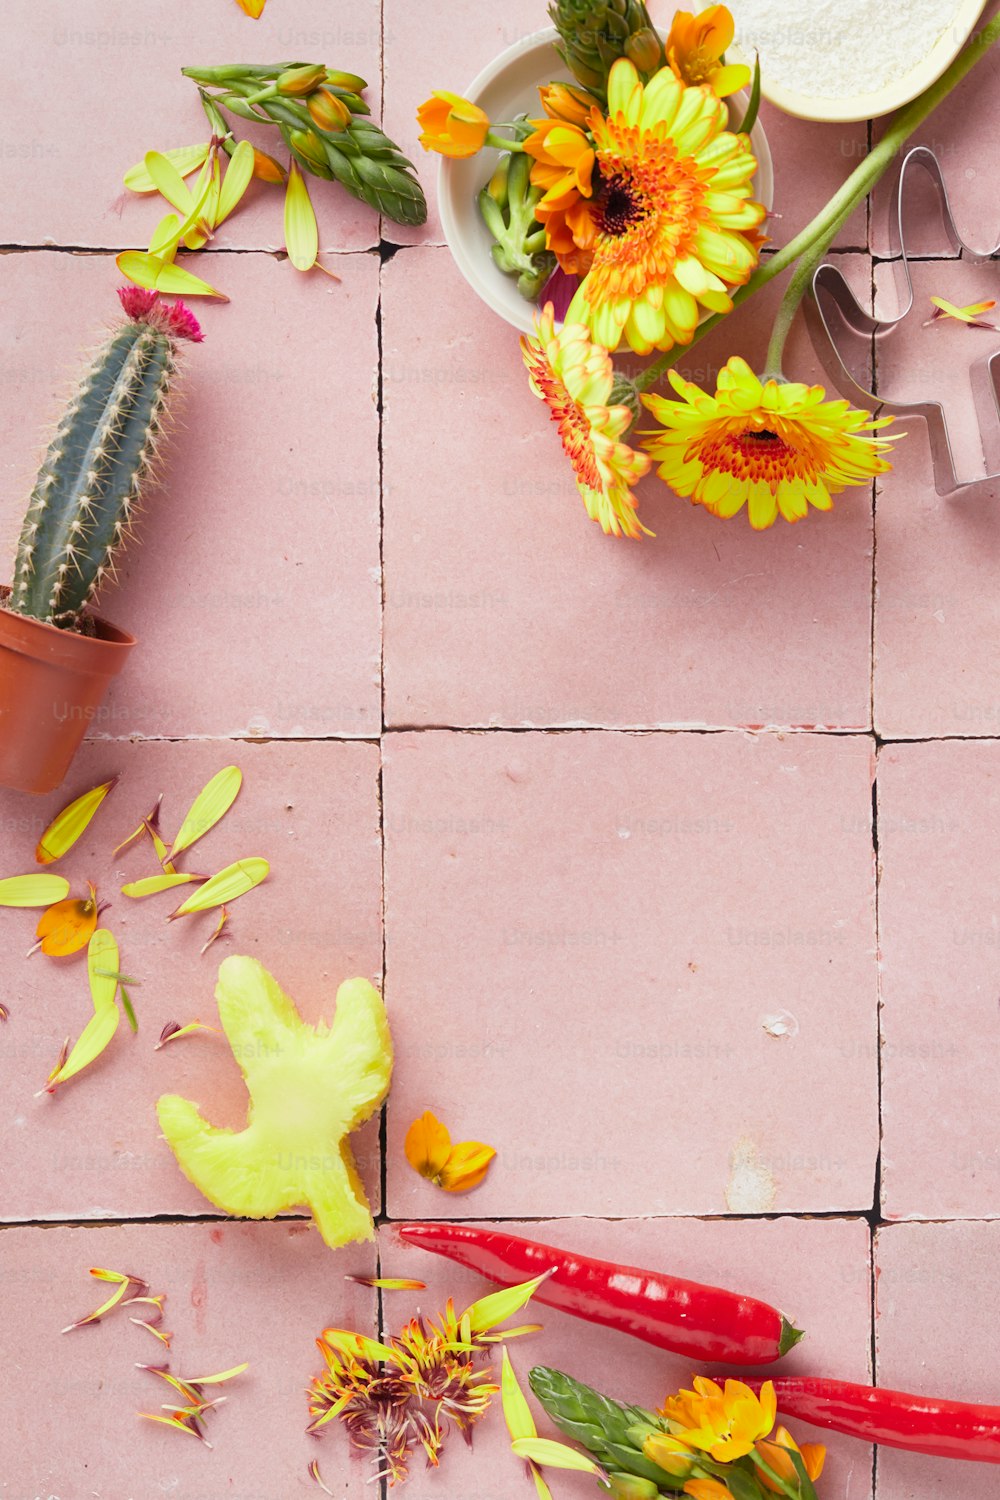 um piso de azulejos rosa com flores e tesouras sobre ele